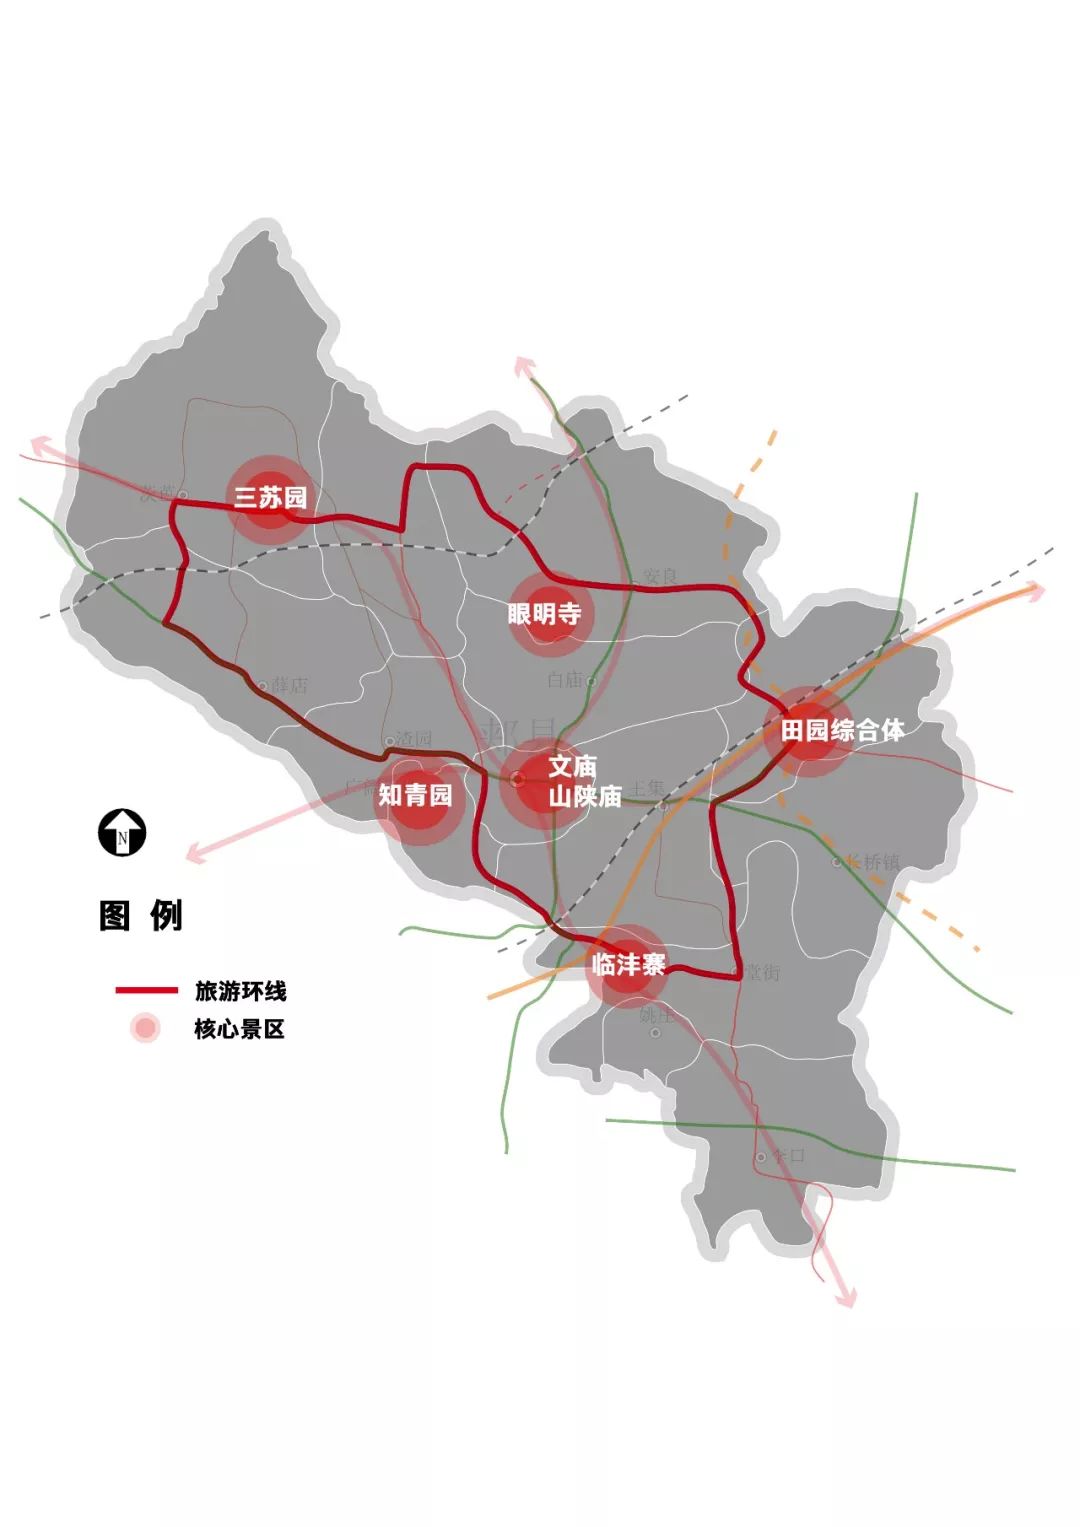 河南省郏县全域旅游发展规划(2018-2027) (节选)